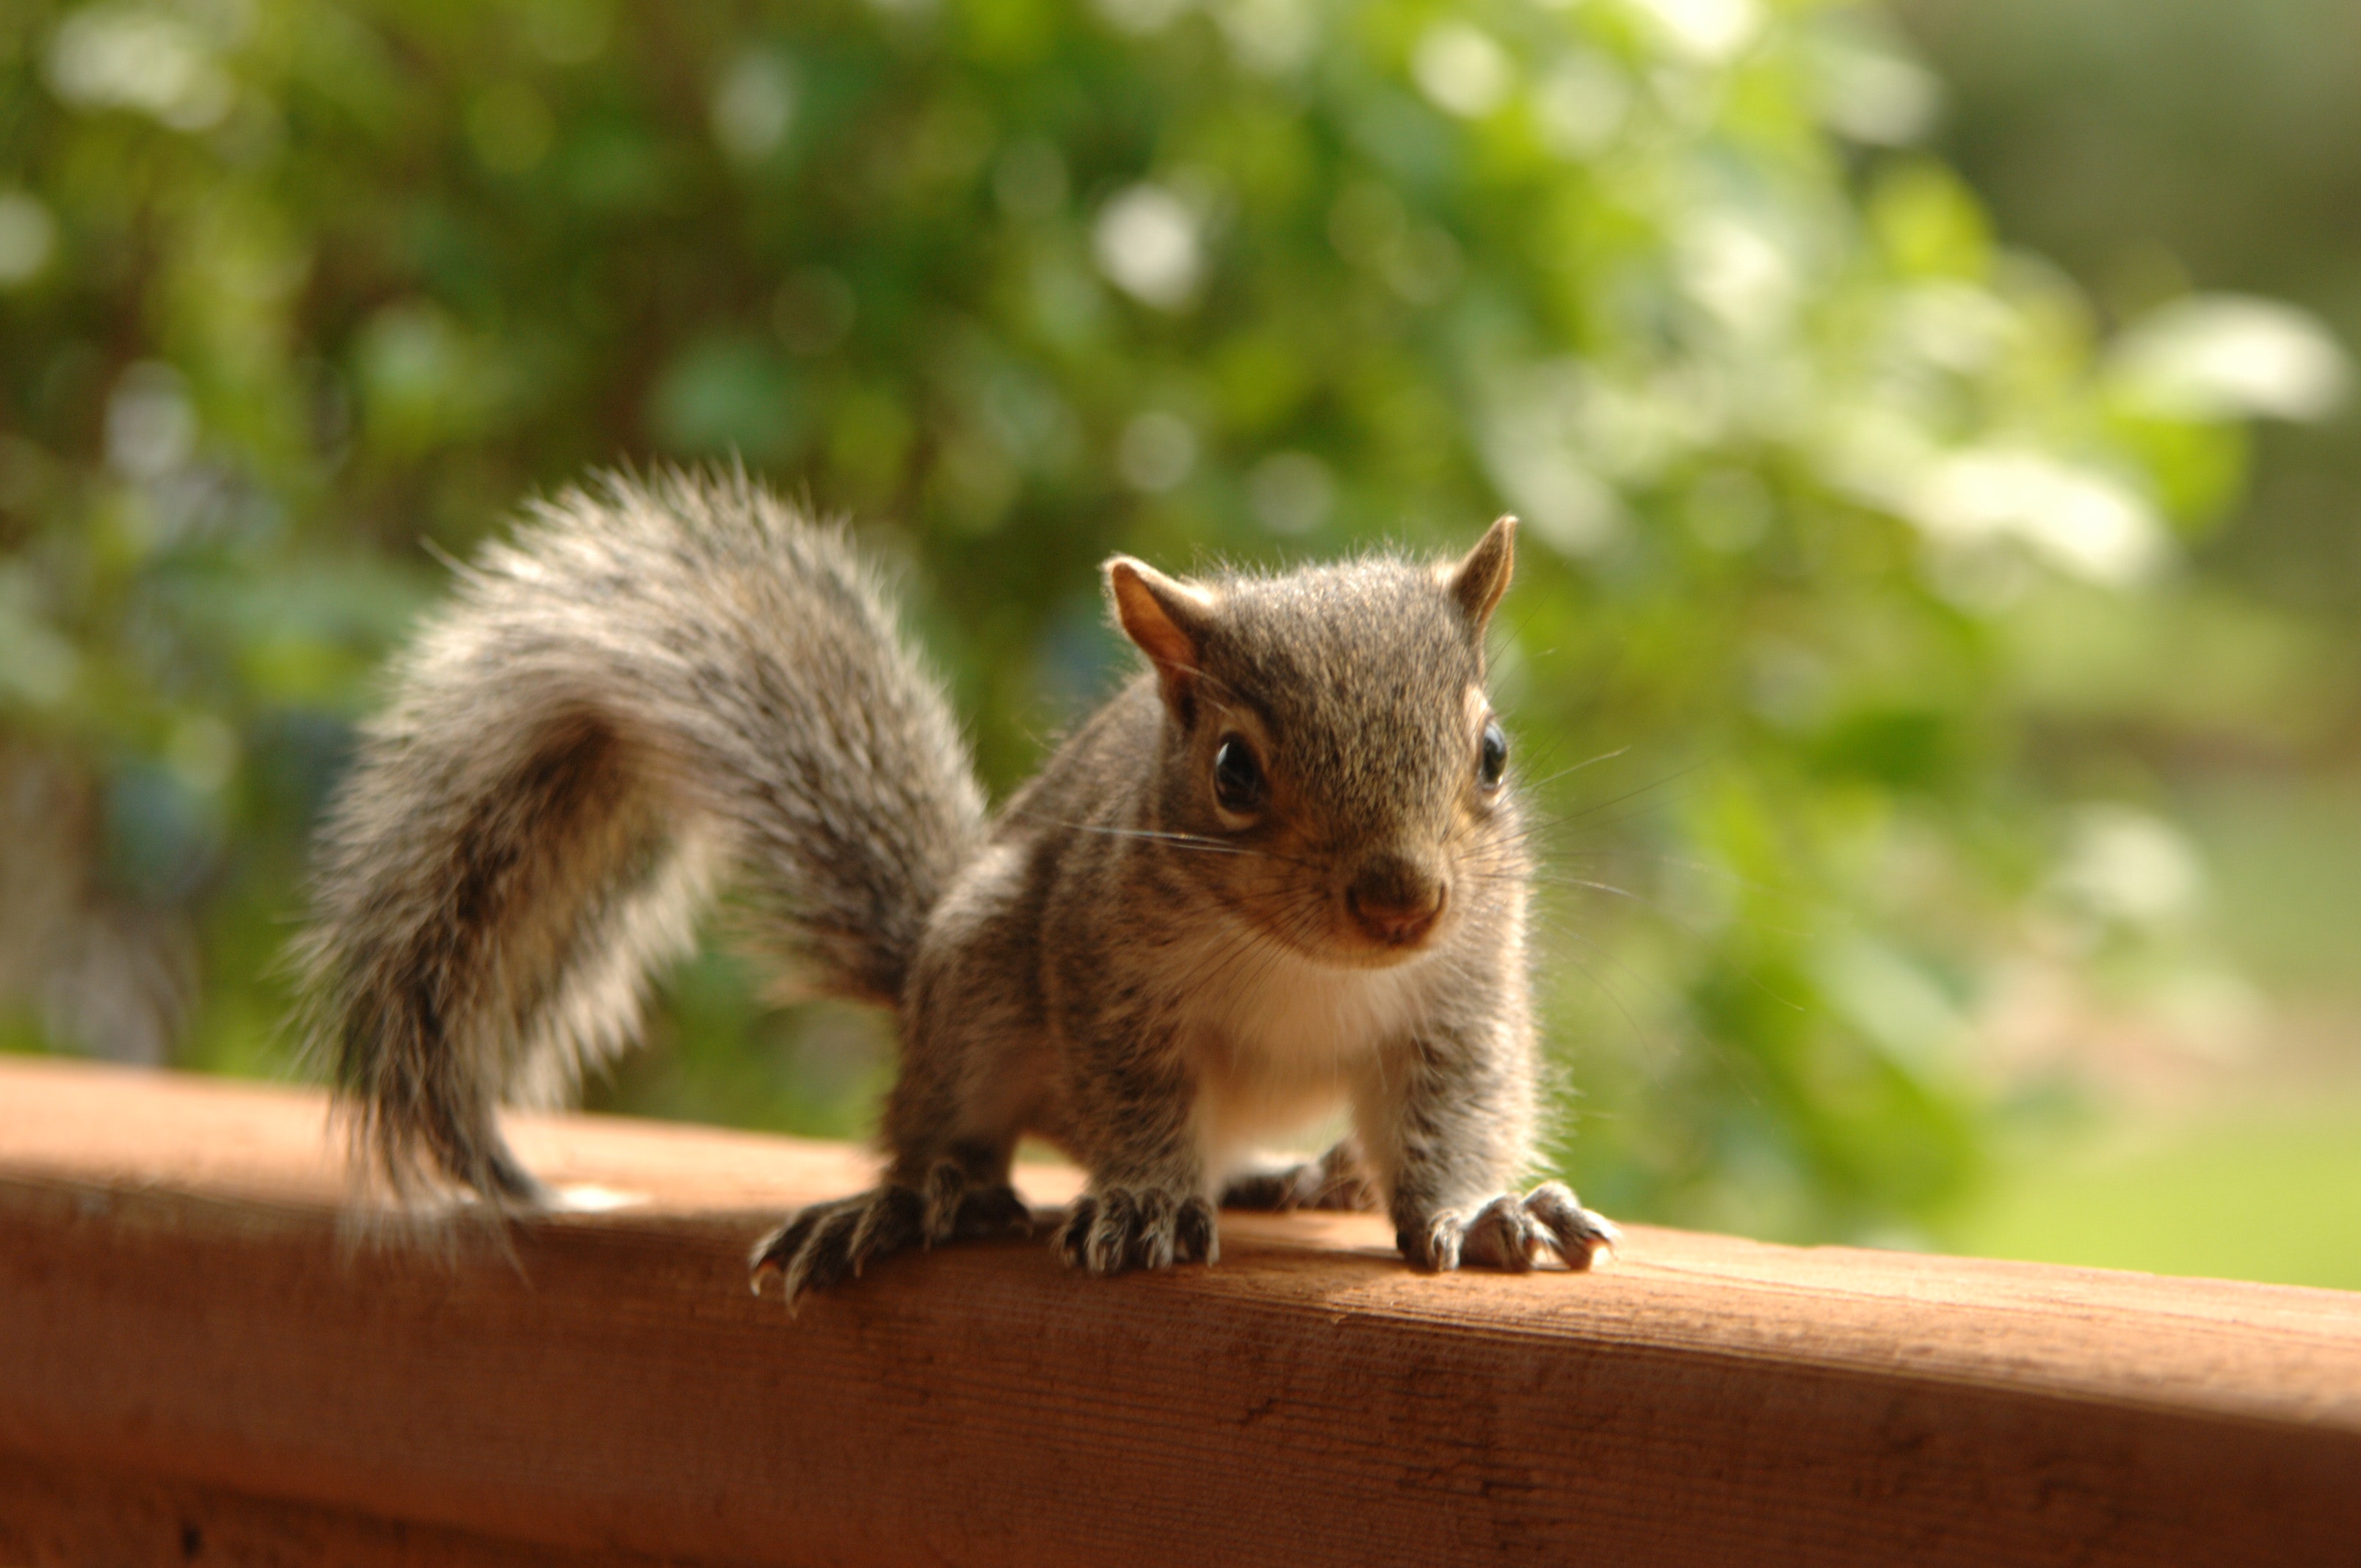 Photo of Squirrel